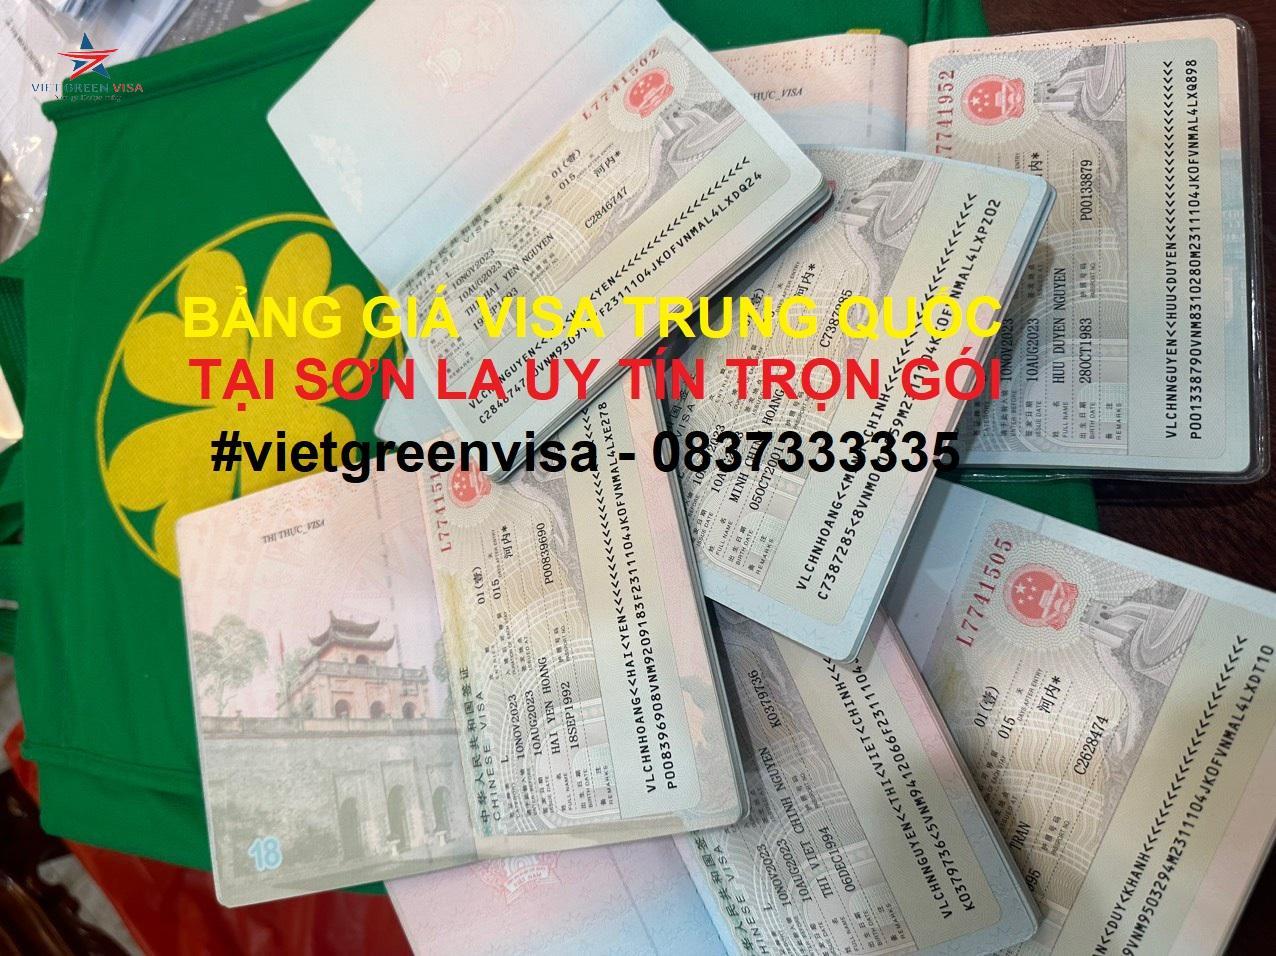 Dịch vụ xin visa Trung Quốc tại Sơn La uy tín trọn gói